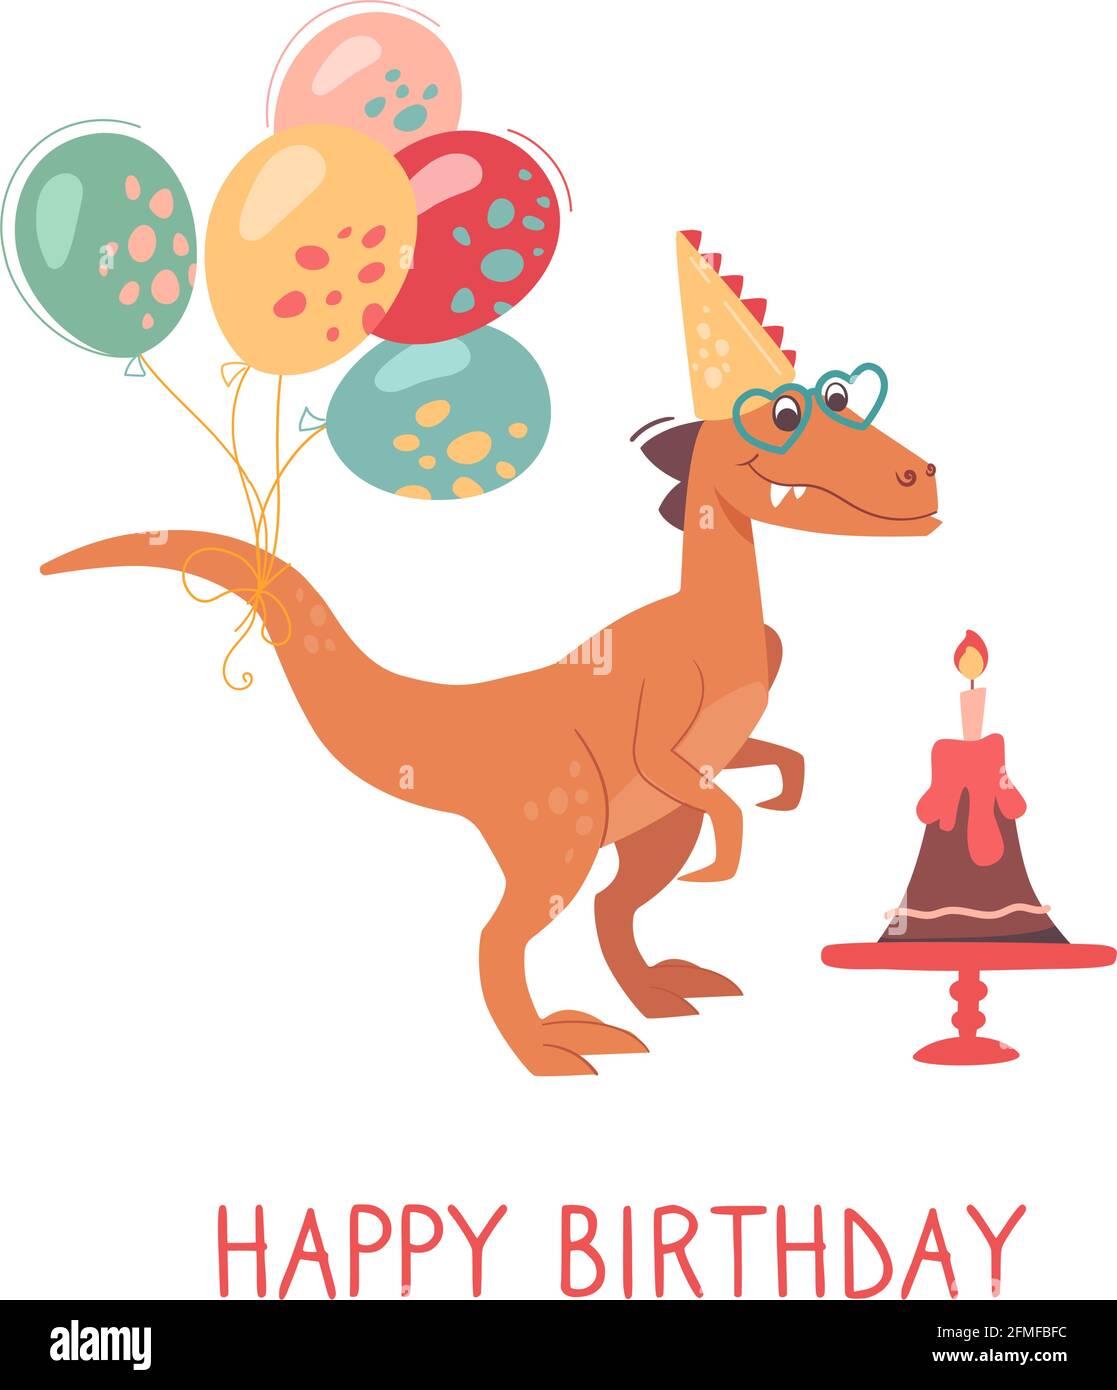 plantilla de vector de invitación de fiesta de cumpleaños de dinosaurio.  Afiche de celebración de cumpleaños